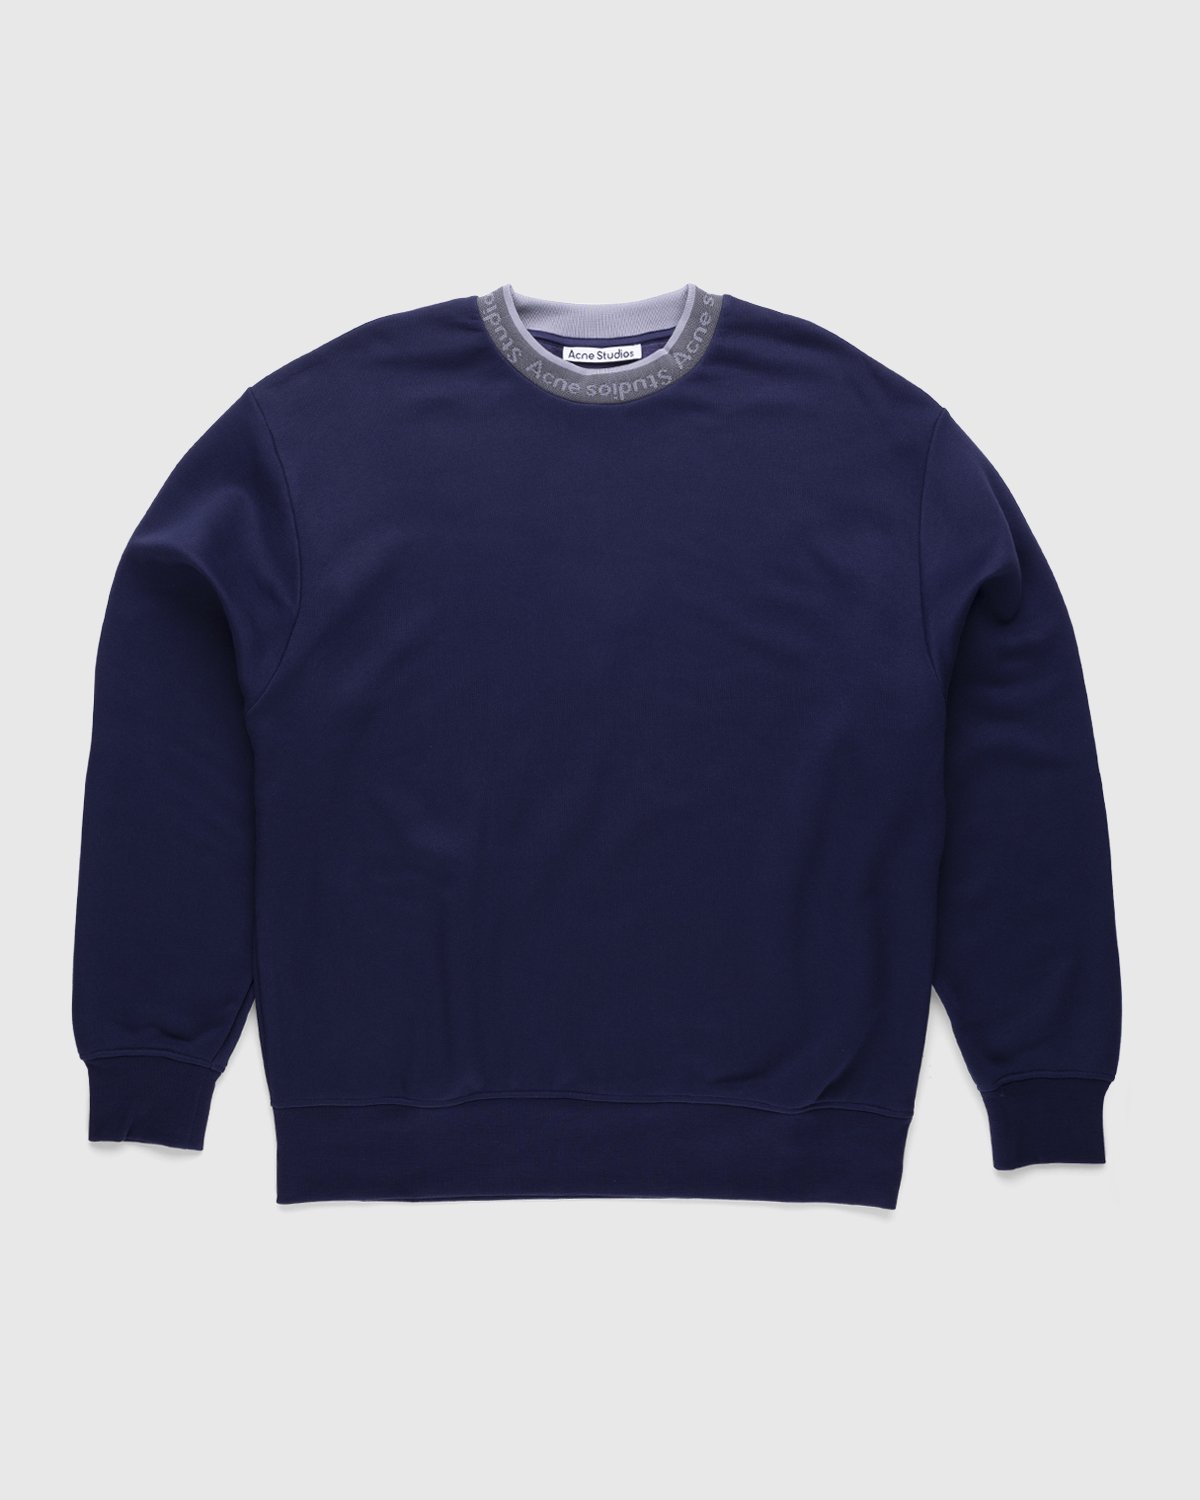 Acne Studios - Logo Rib Sweatshirt Indigo Blue - Clothing - Blue - Image 1